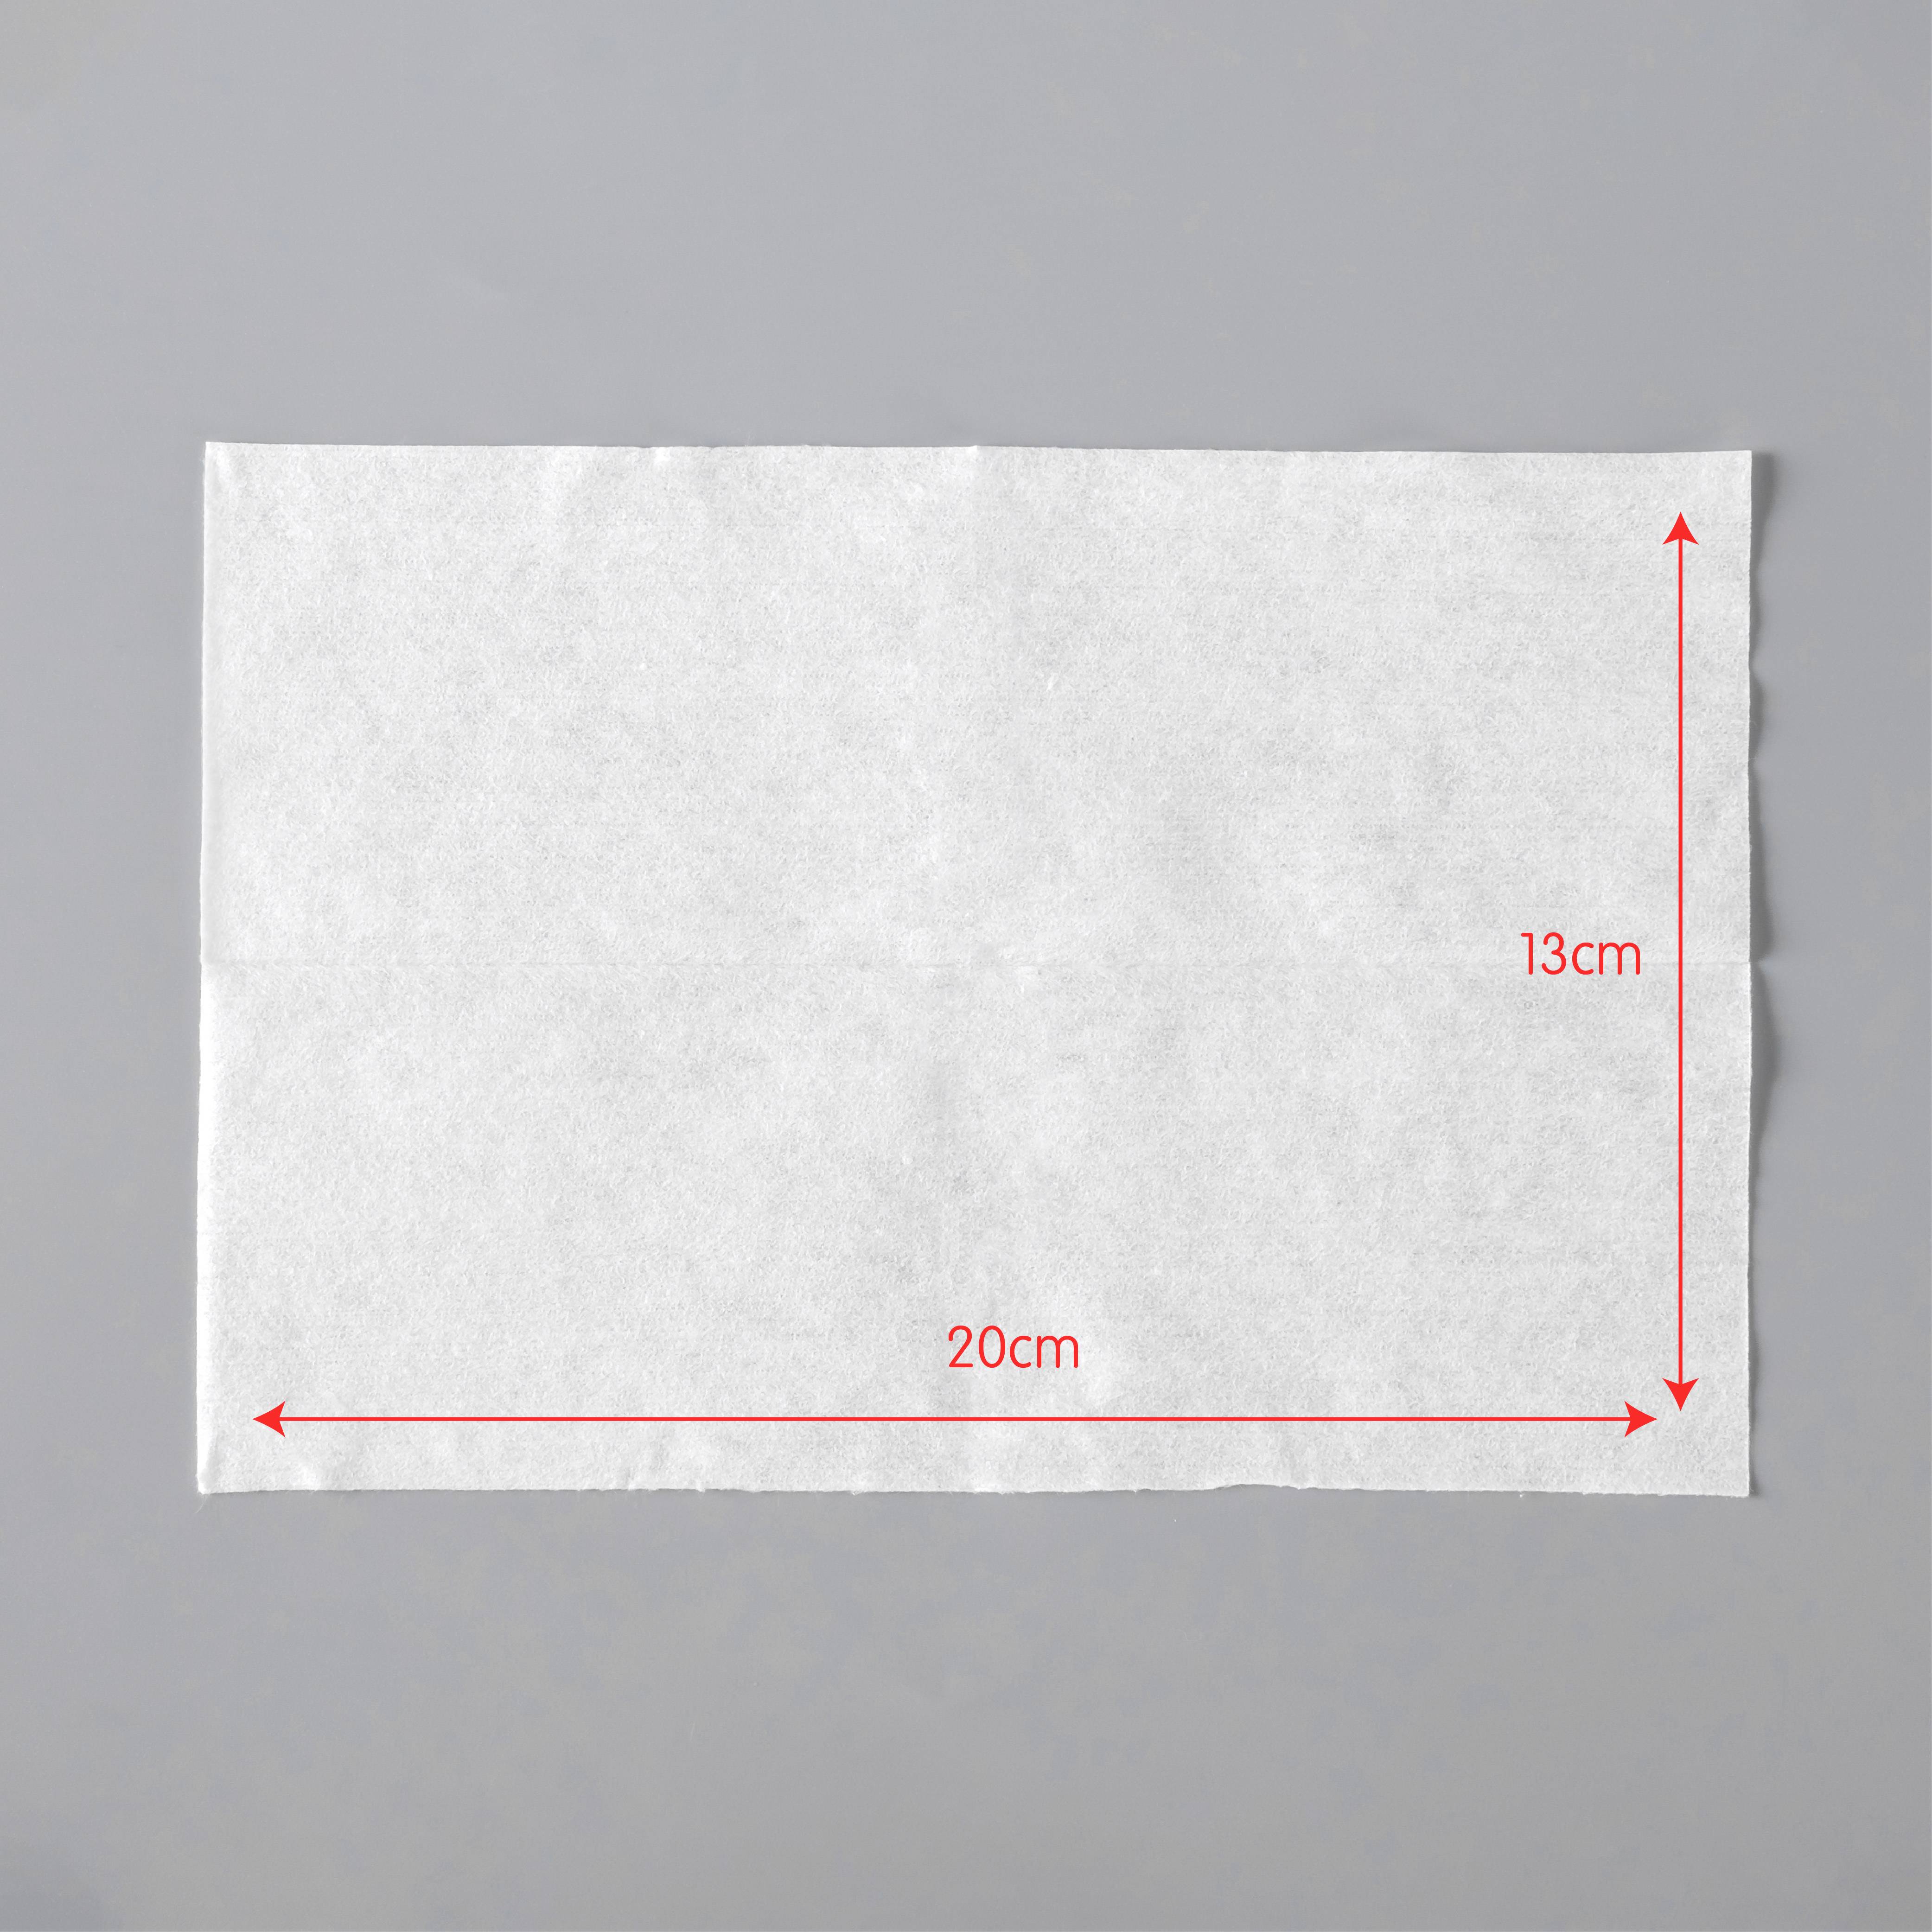 Antibacterial Cotton Sheet Mini Pack 15pcs - 9 pkts